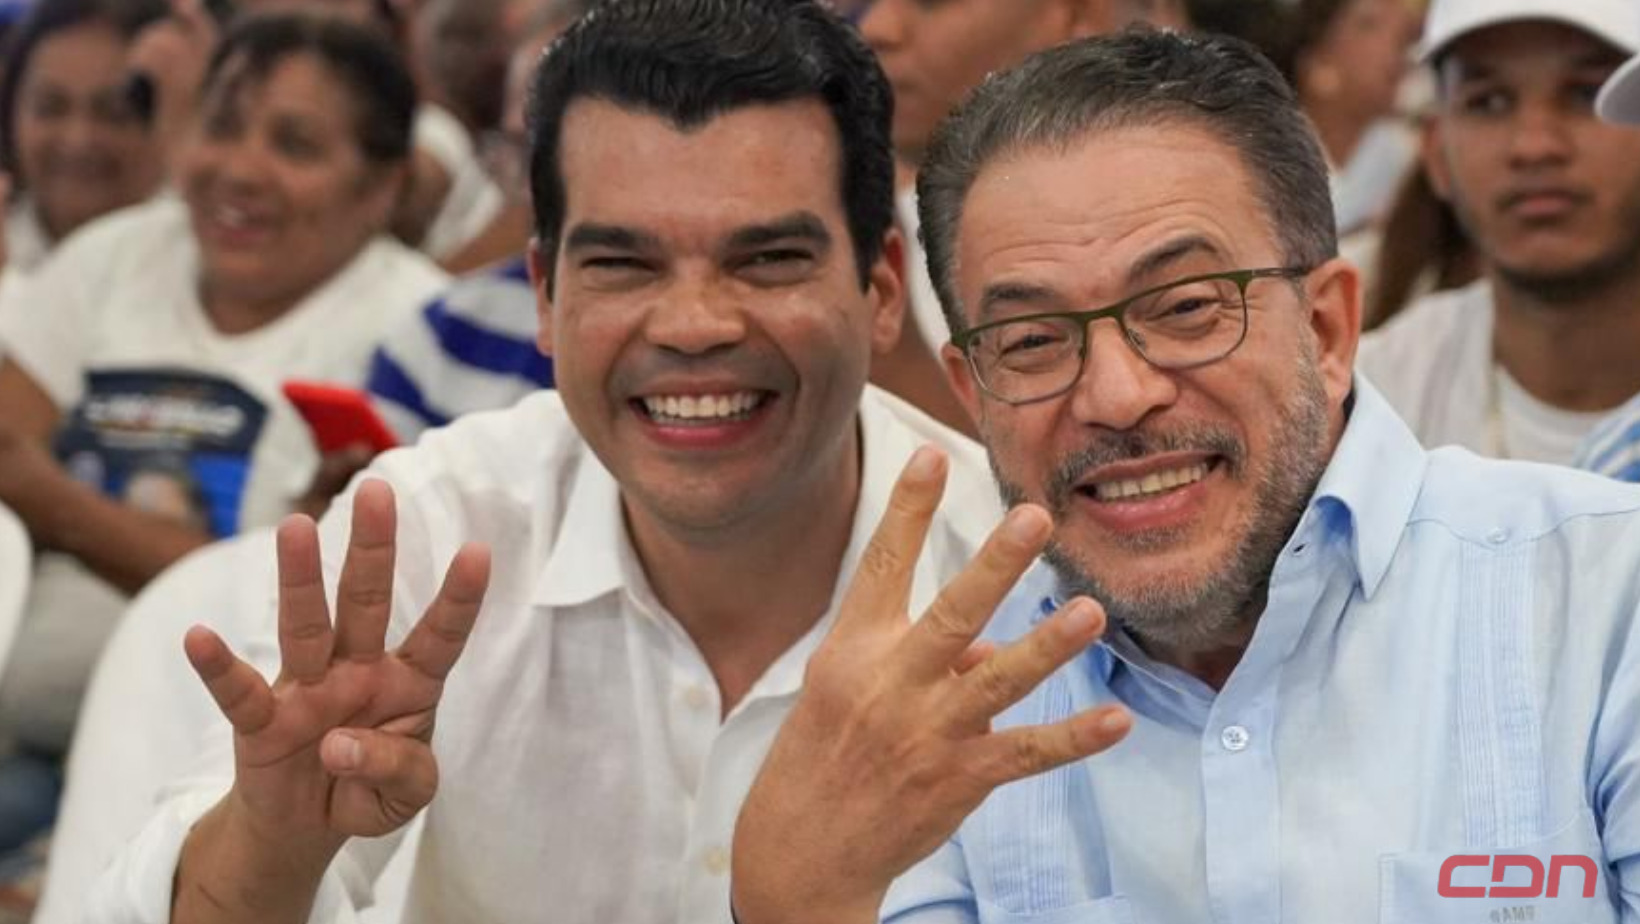 El alto dirigente del PRM, Wellington Arnaud y el candidato a senador por DN, Guillermo Moreno. Foto: Fuente externa